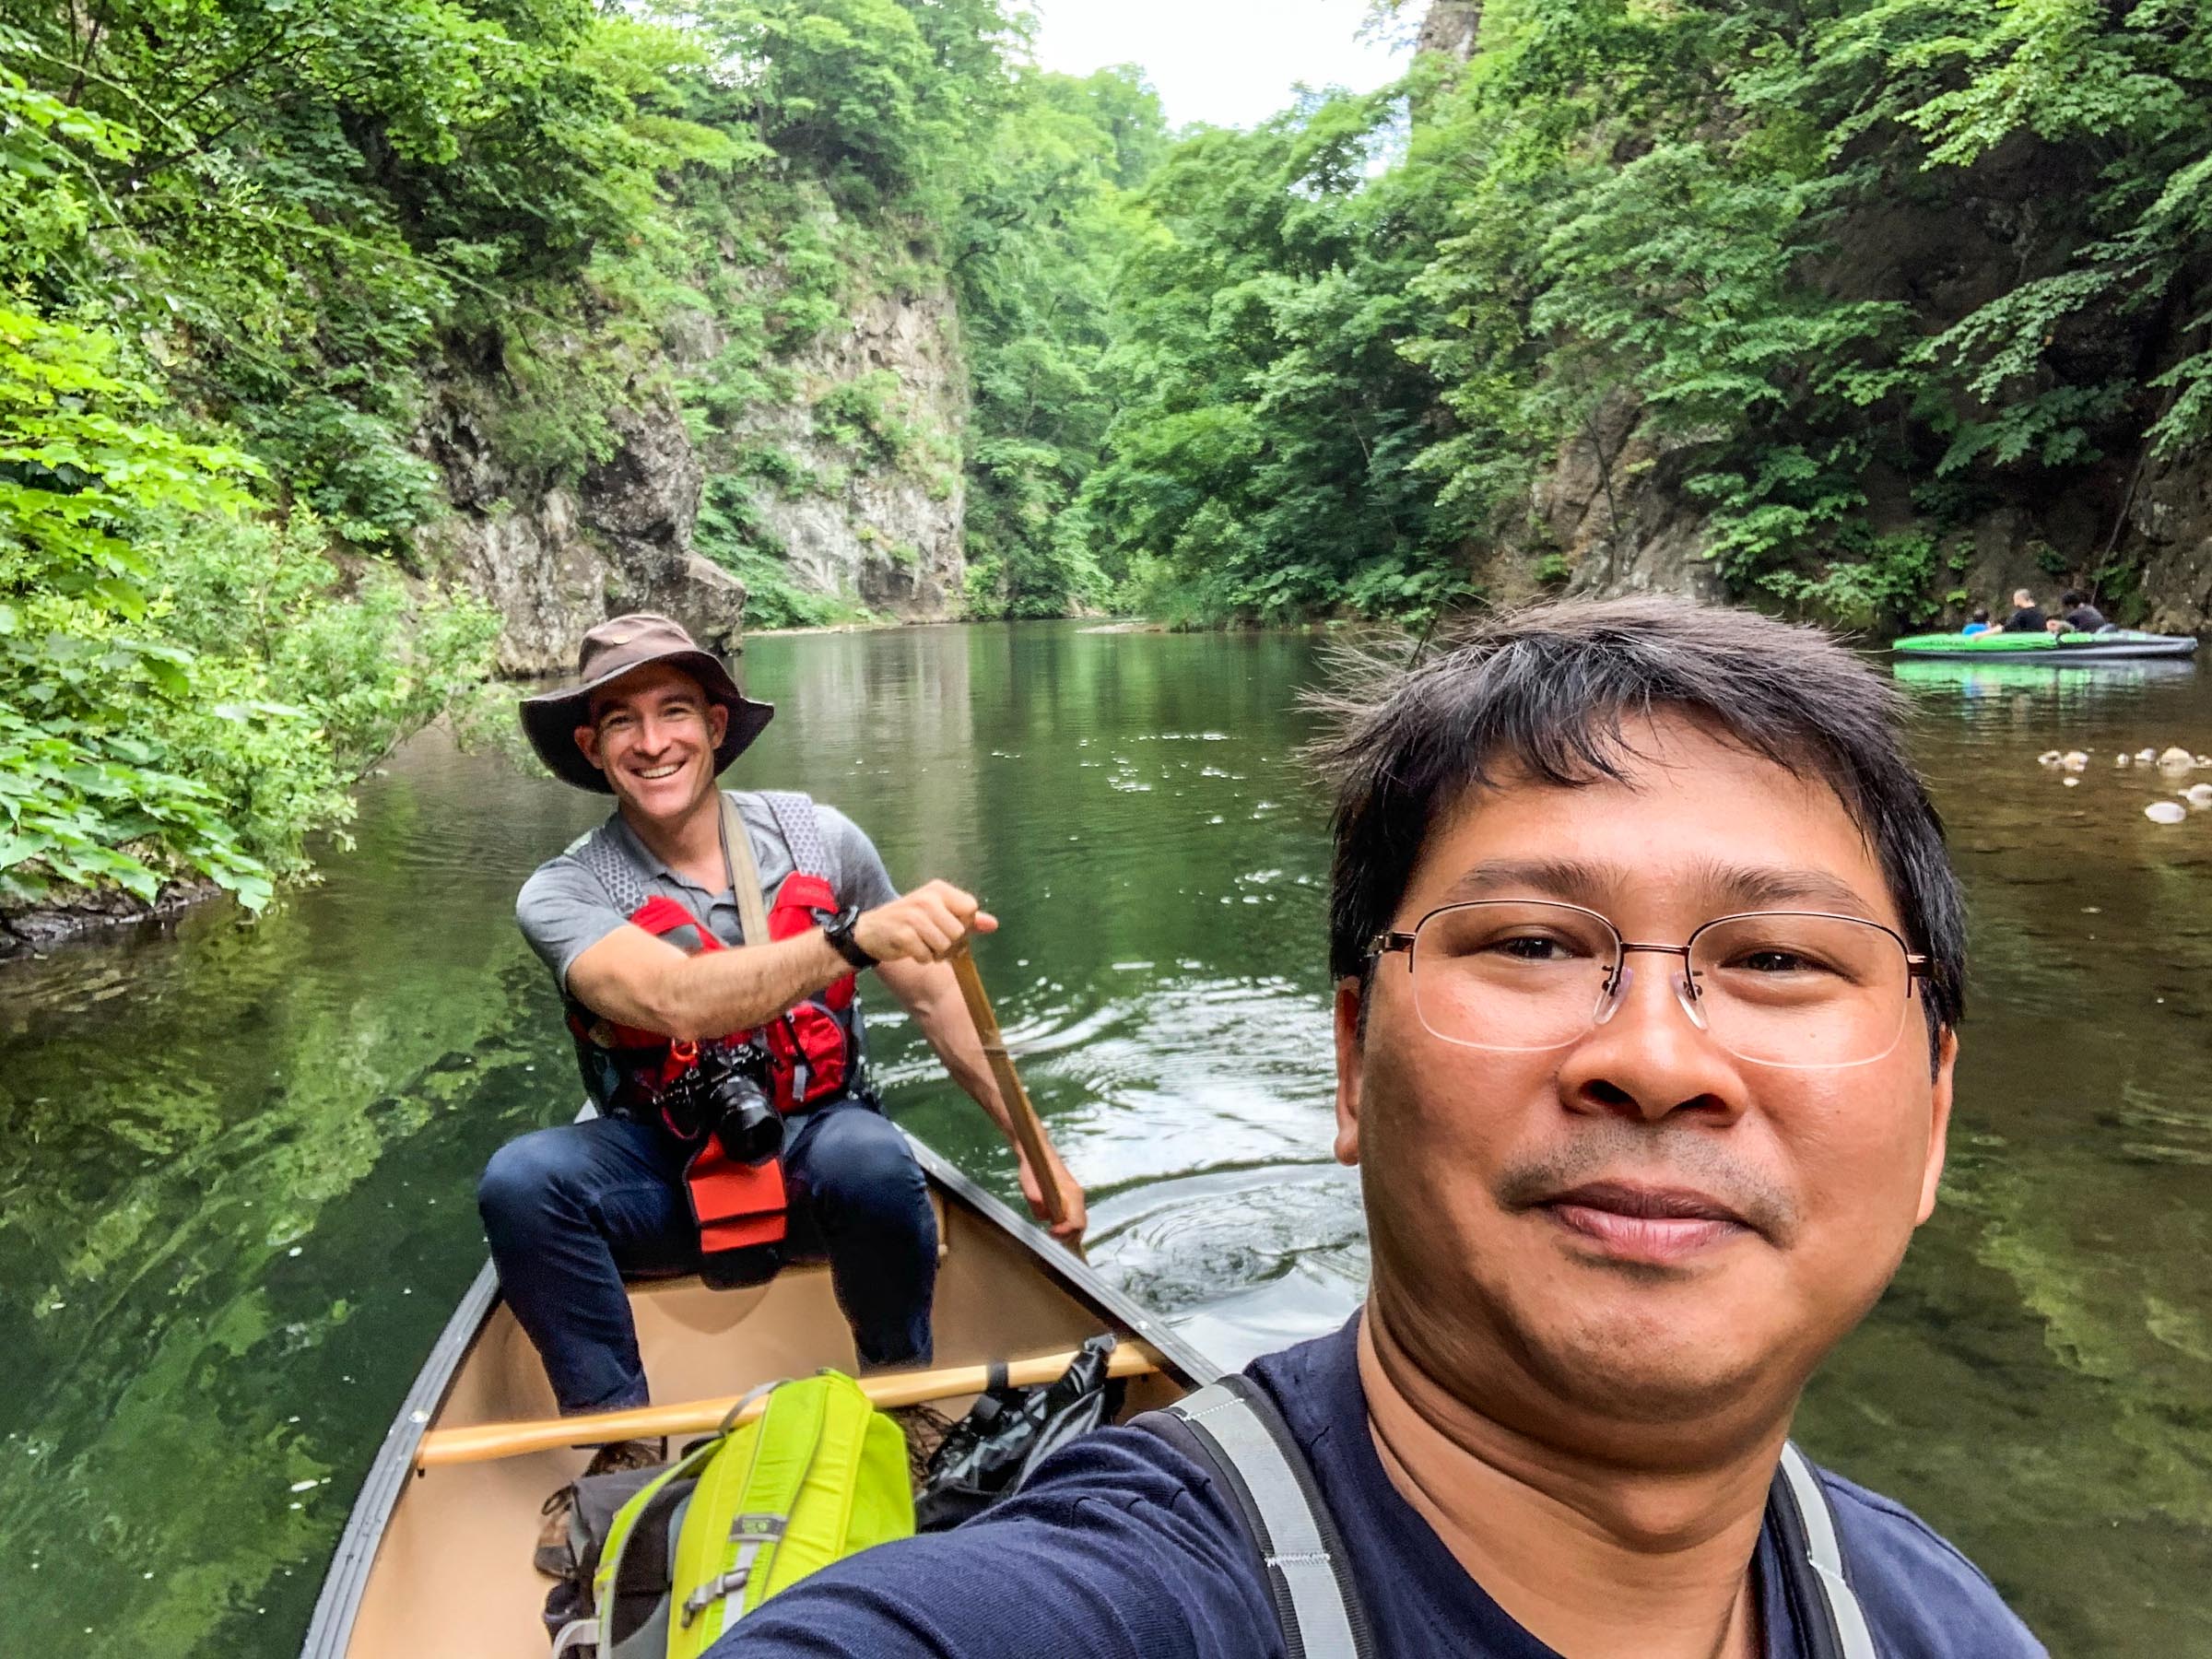 Canoeing on Toyohira River (Jozankei, Hokkaido, Japan)